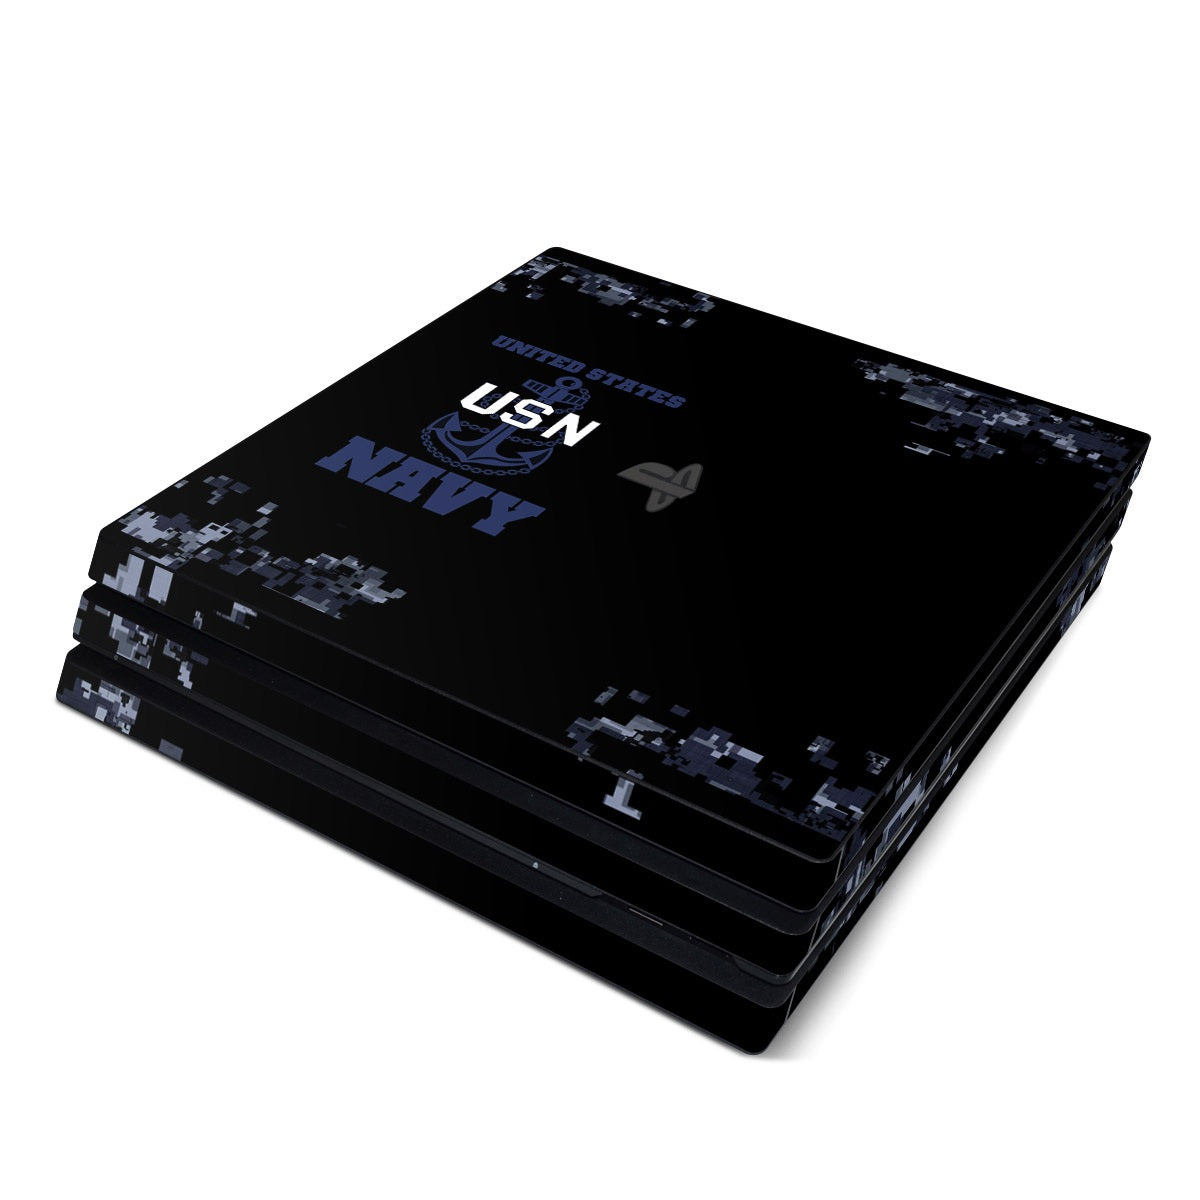 USN - Sony PS4 Pro Skin